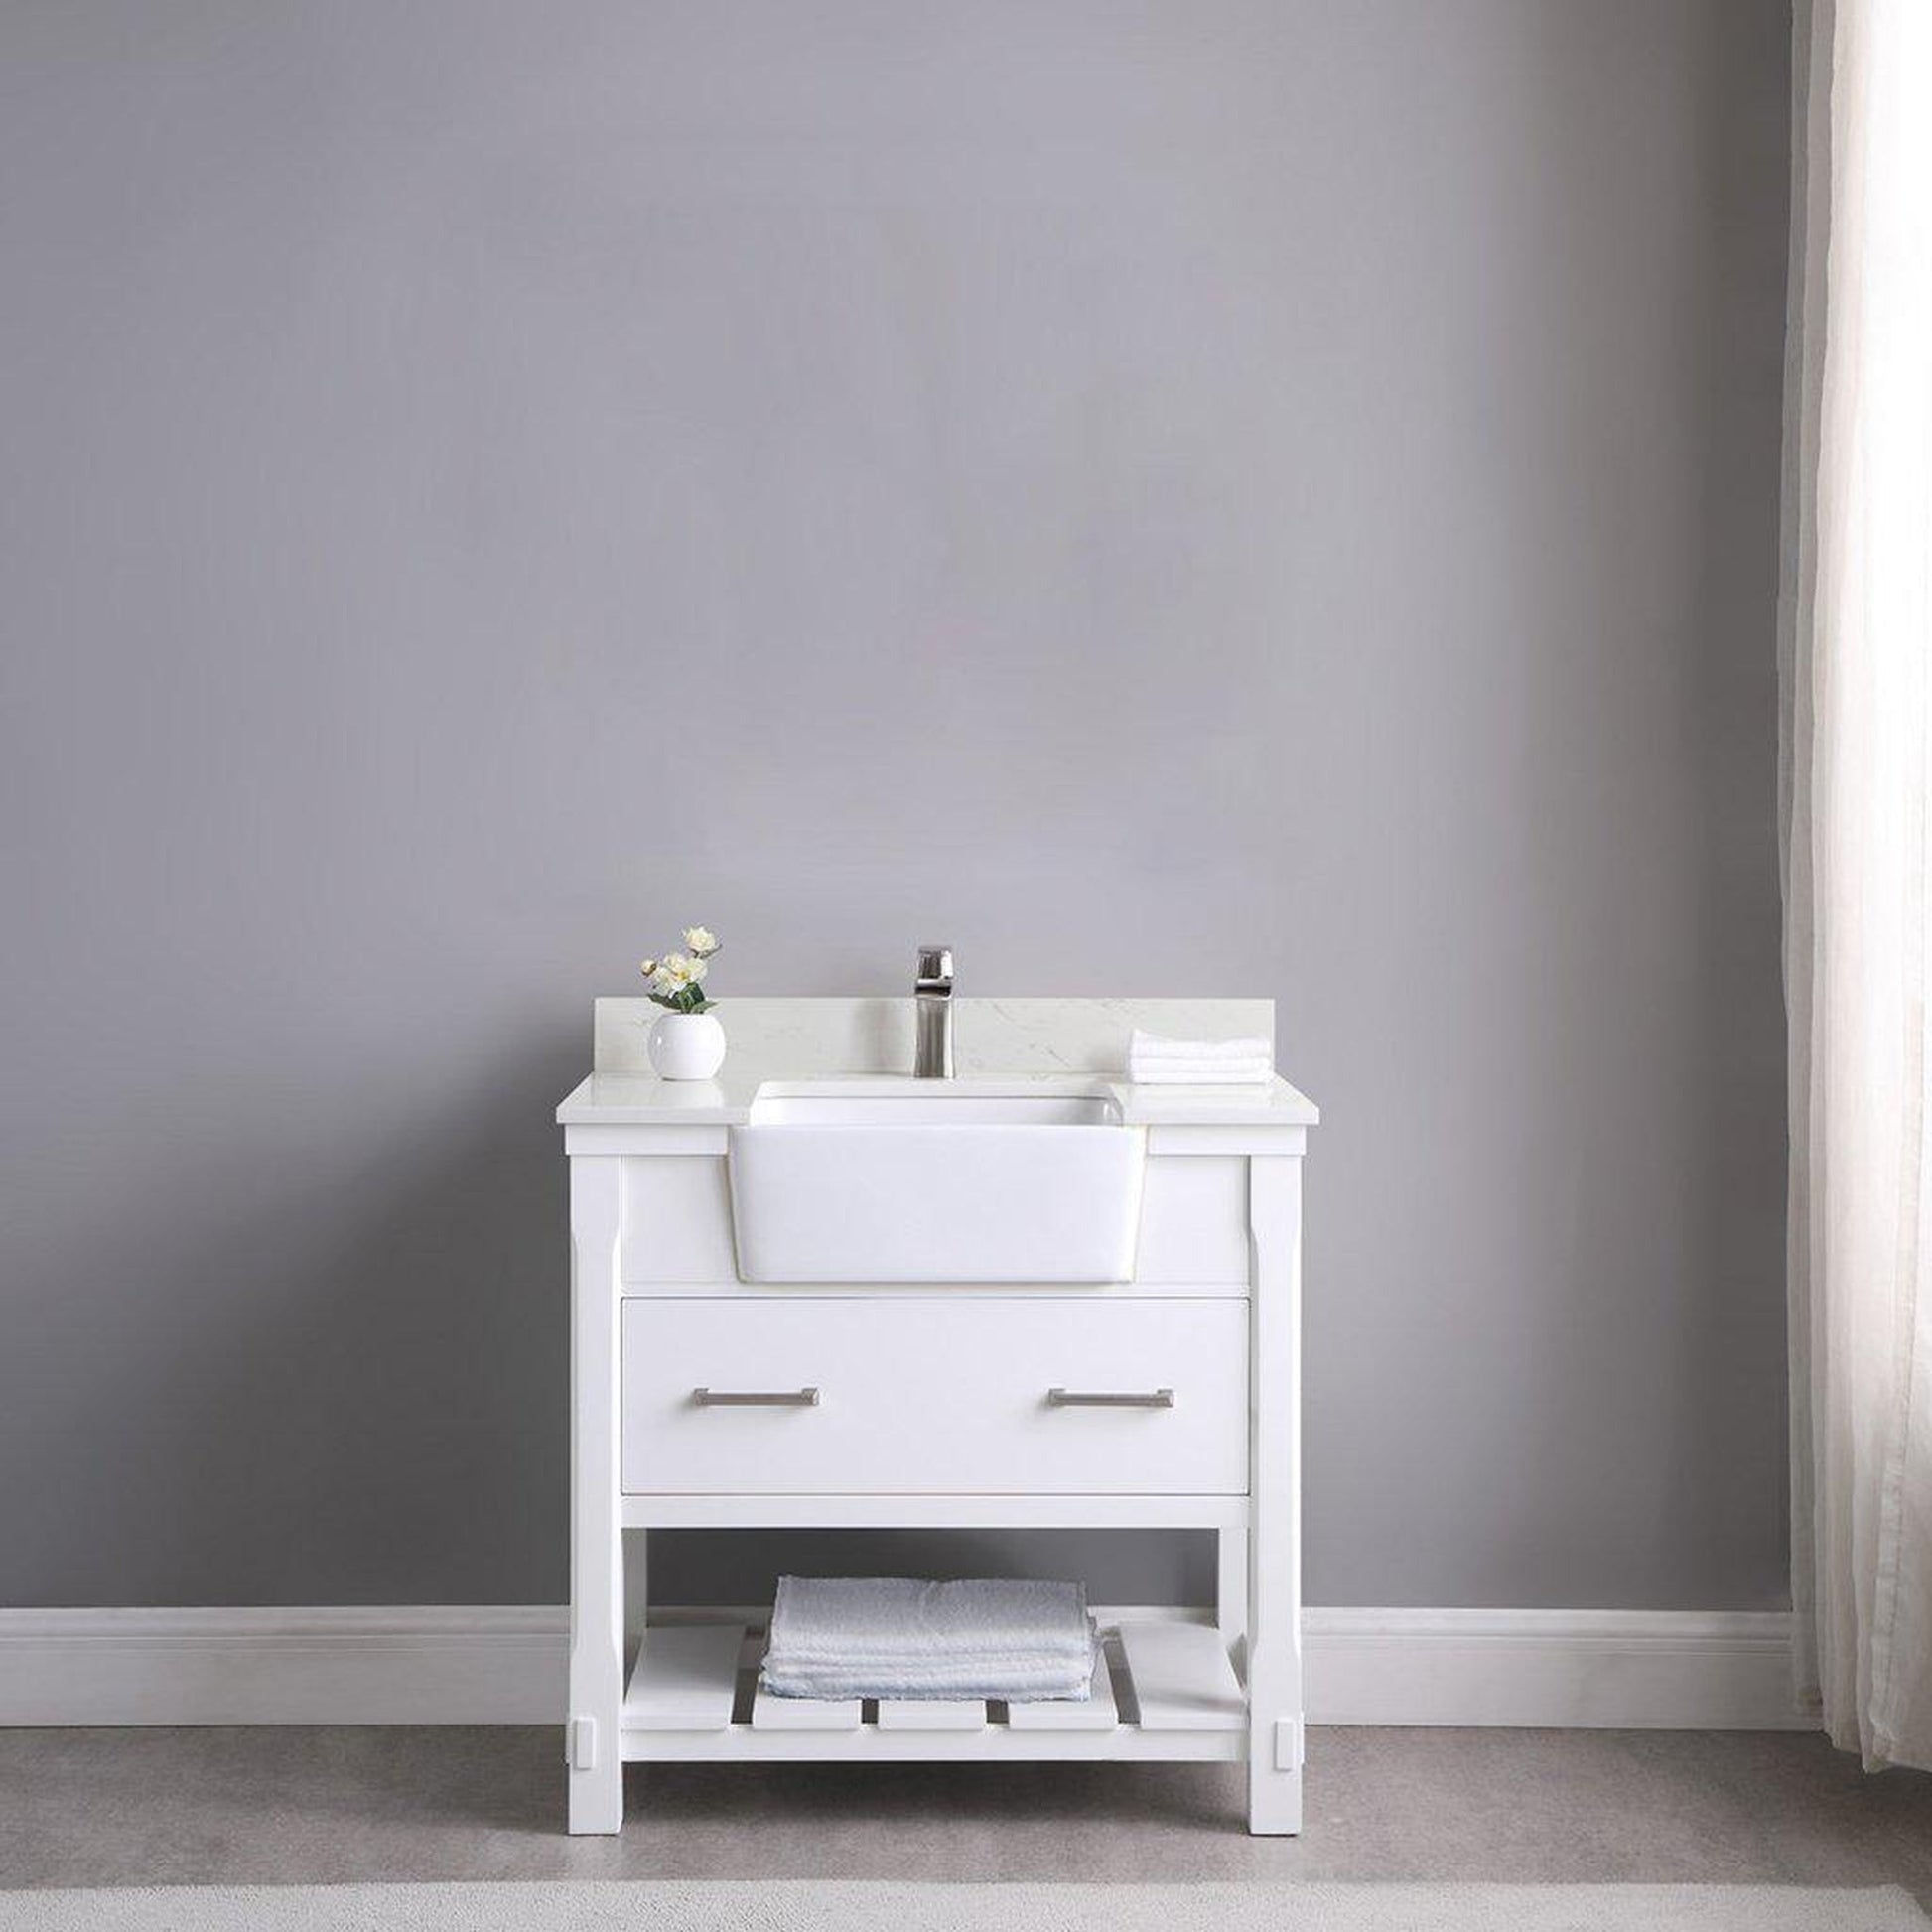 Altair Georgia 36" Single White Freestanding Bathroom Vanity Set With Mirror, Aosta White Composite Stone Top, Rectangular Farmhouse Sink, Overflow, and Backsplash